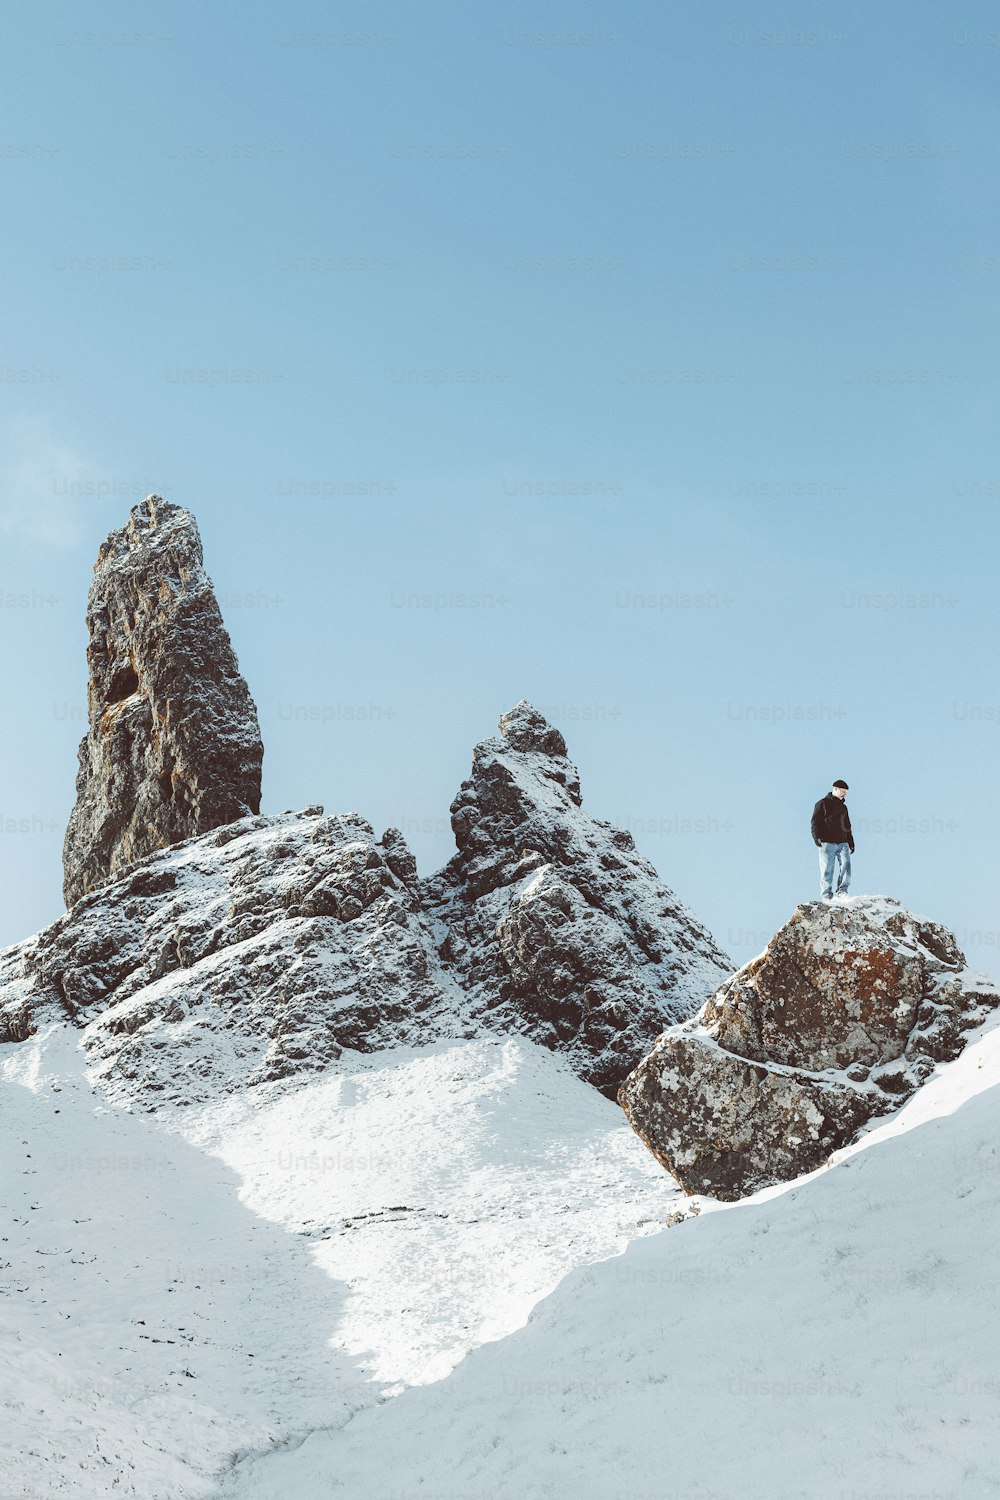 un uomo in piedi sulla cima di una montagna coperta di neve